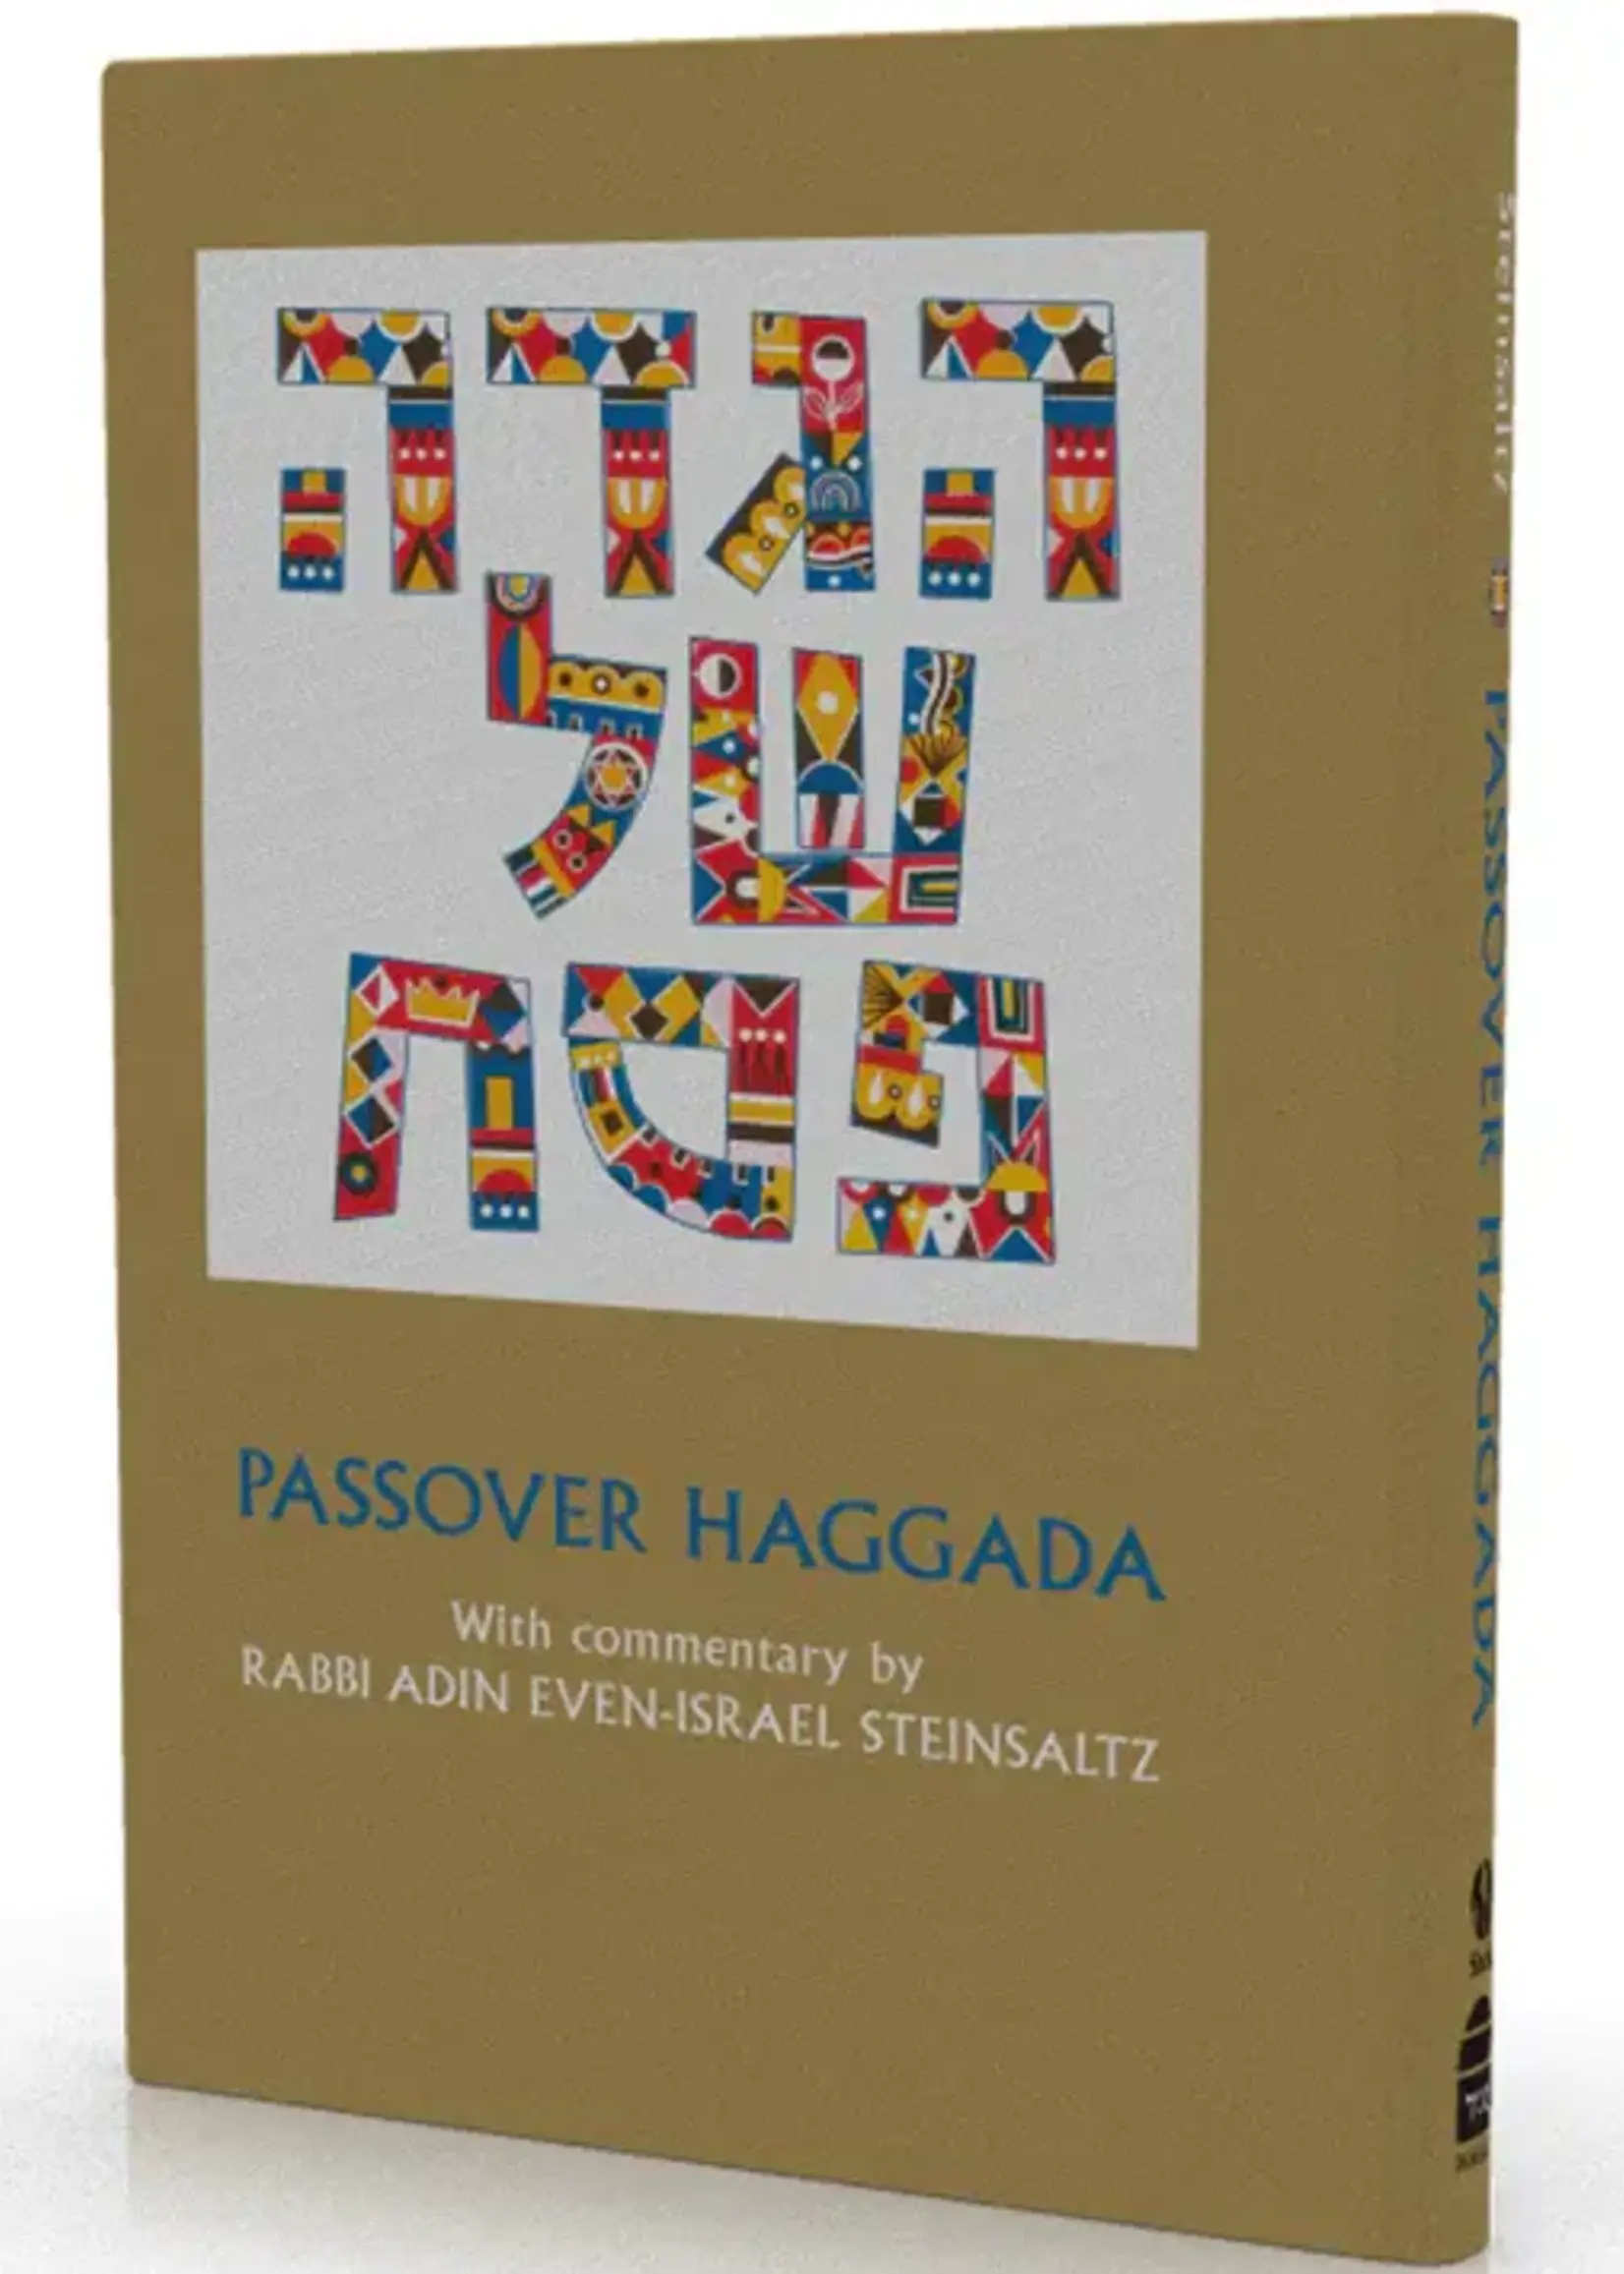 Rabbi Adin Even - Yisrael Steinzaltz Passover Haggada Steinsaltz